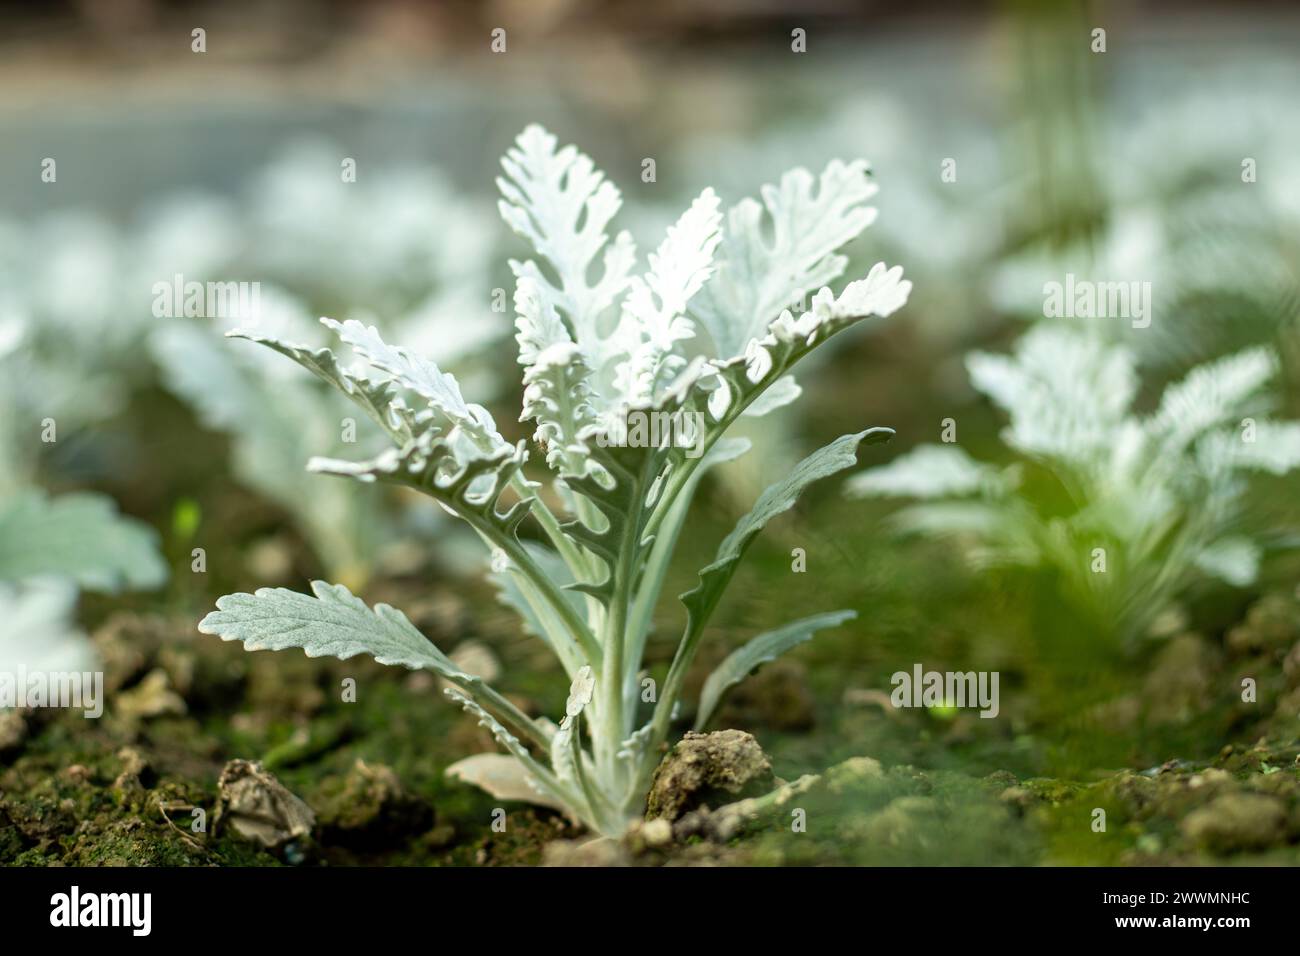 Cineraria Maritima ou argentée Ragwort, communément connue sous le nom d'armoise argentée, est une espèce de plante vivace du genre Jacobaea dans la famille Banque D'Images